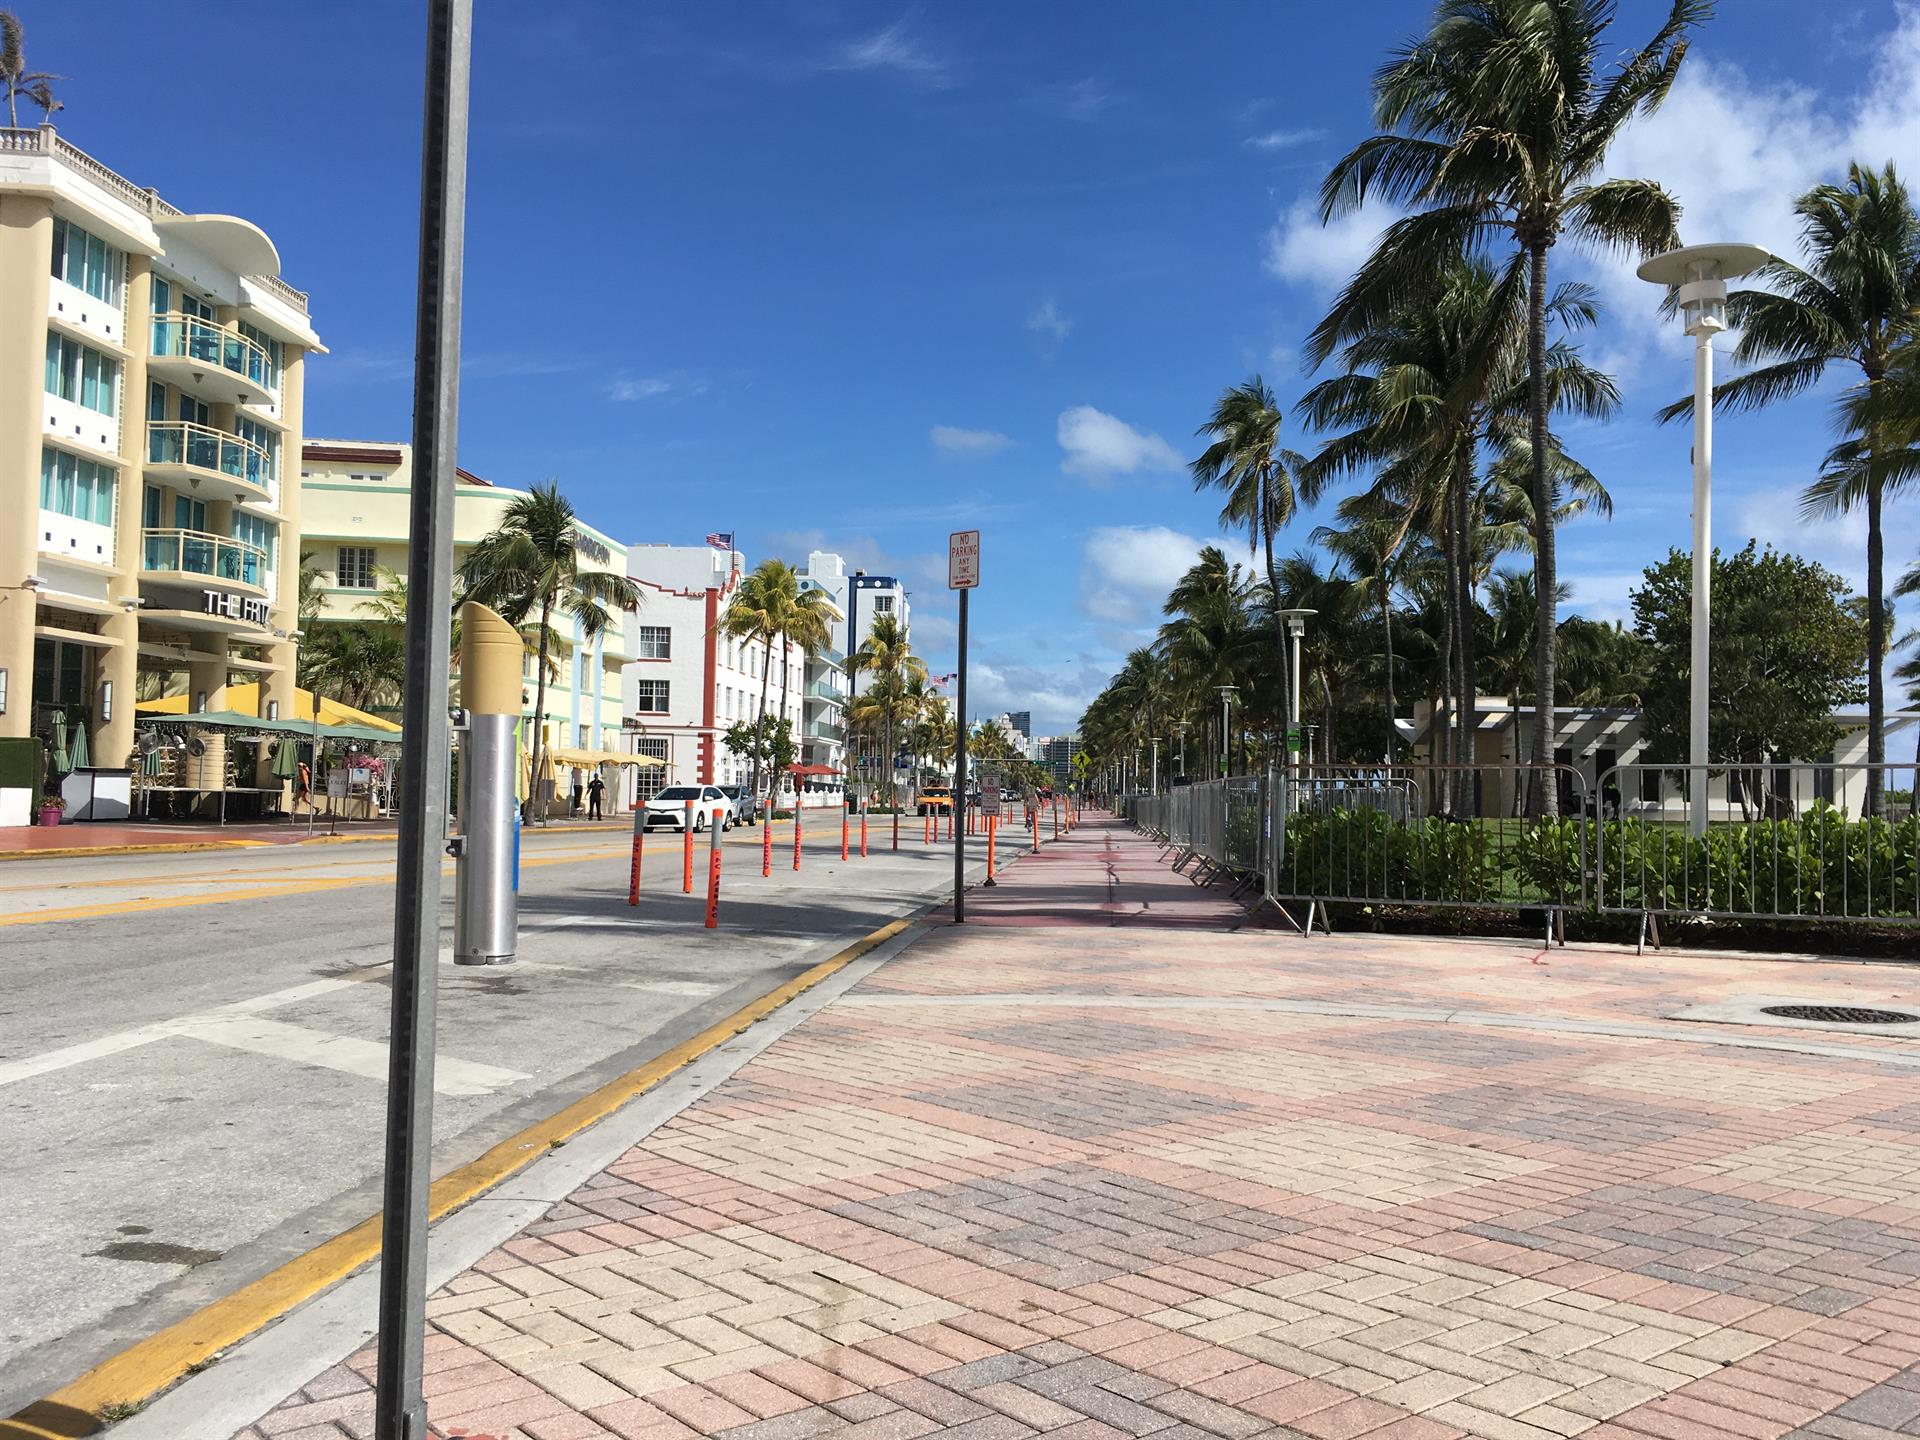 Vista de Ocean Drive, la calle más turística en Miami Beach, Florida. Imagen de archivo. EFE/Ivonne Malaver
